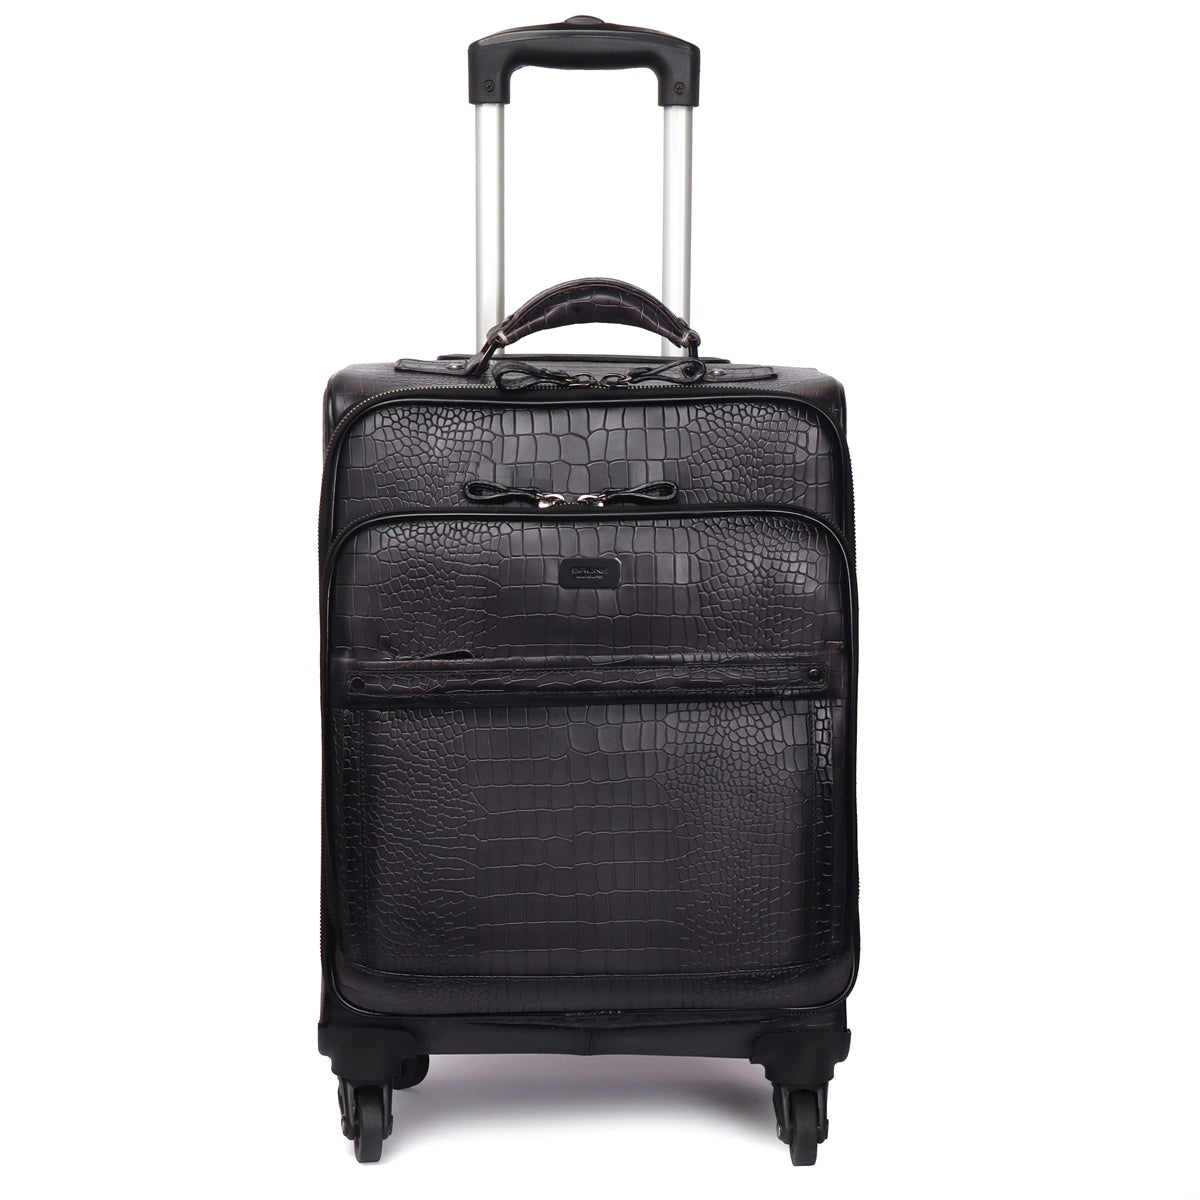 Strolley Quad Wheel Cabin Luggage Smokey Grey Croco Print Leather Bag